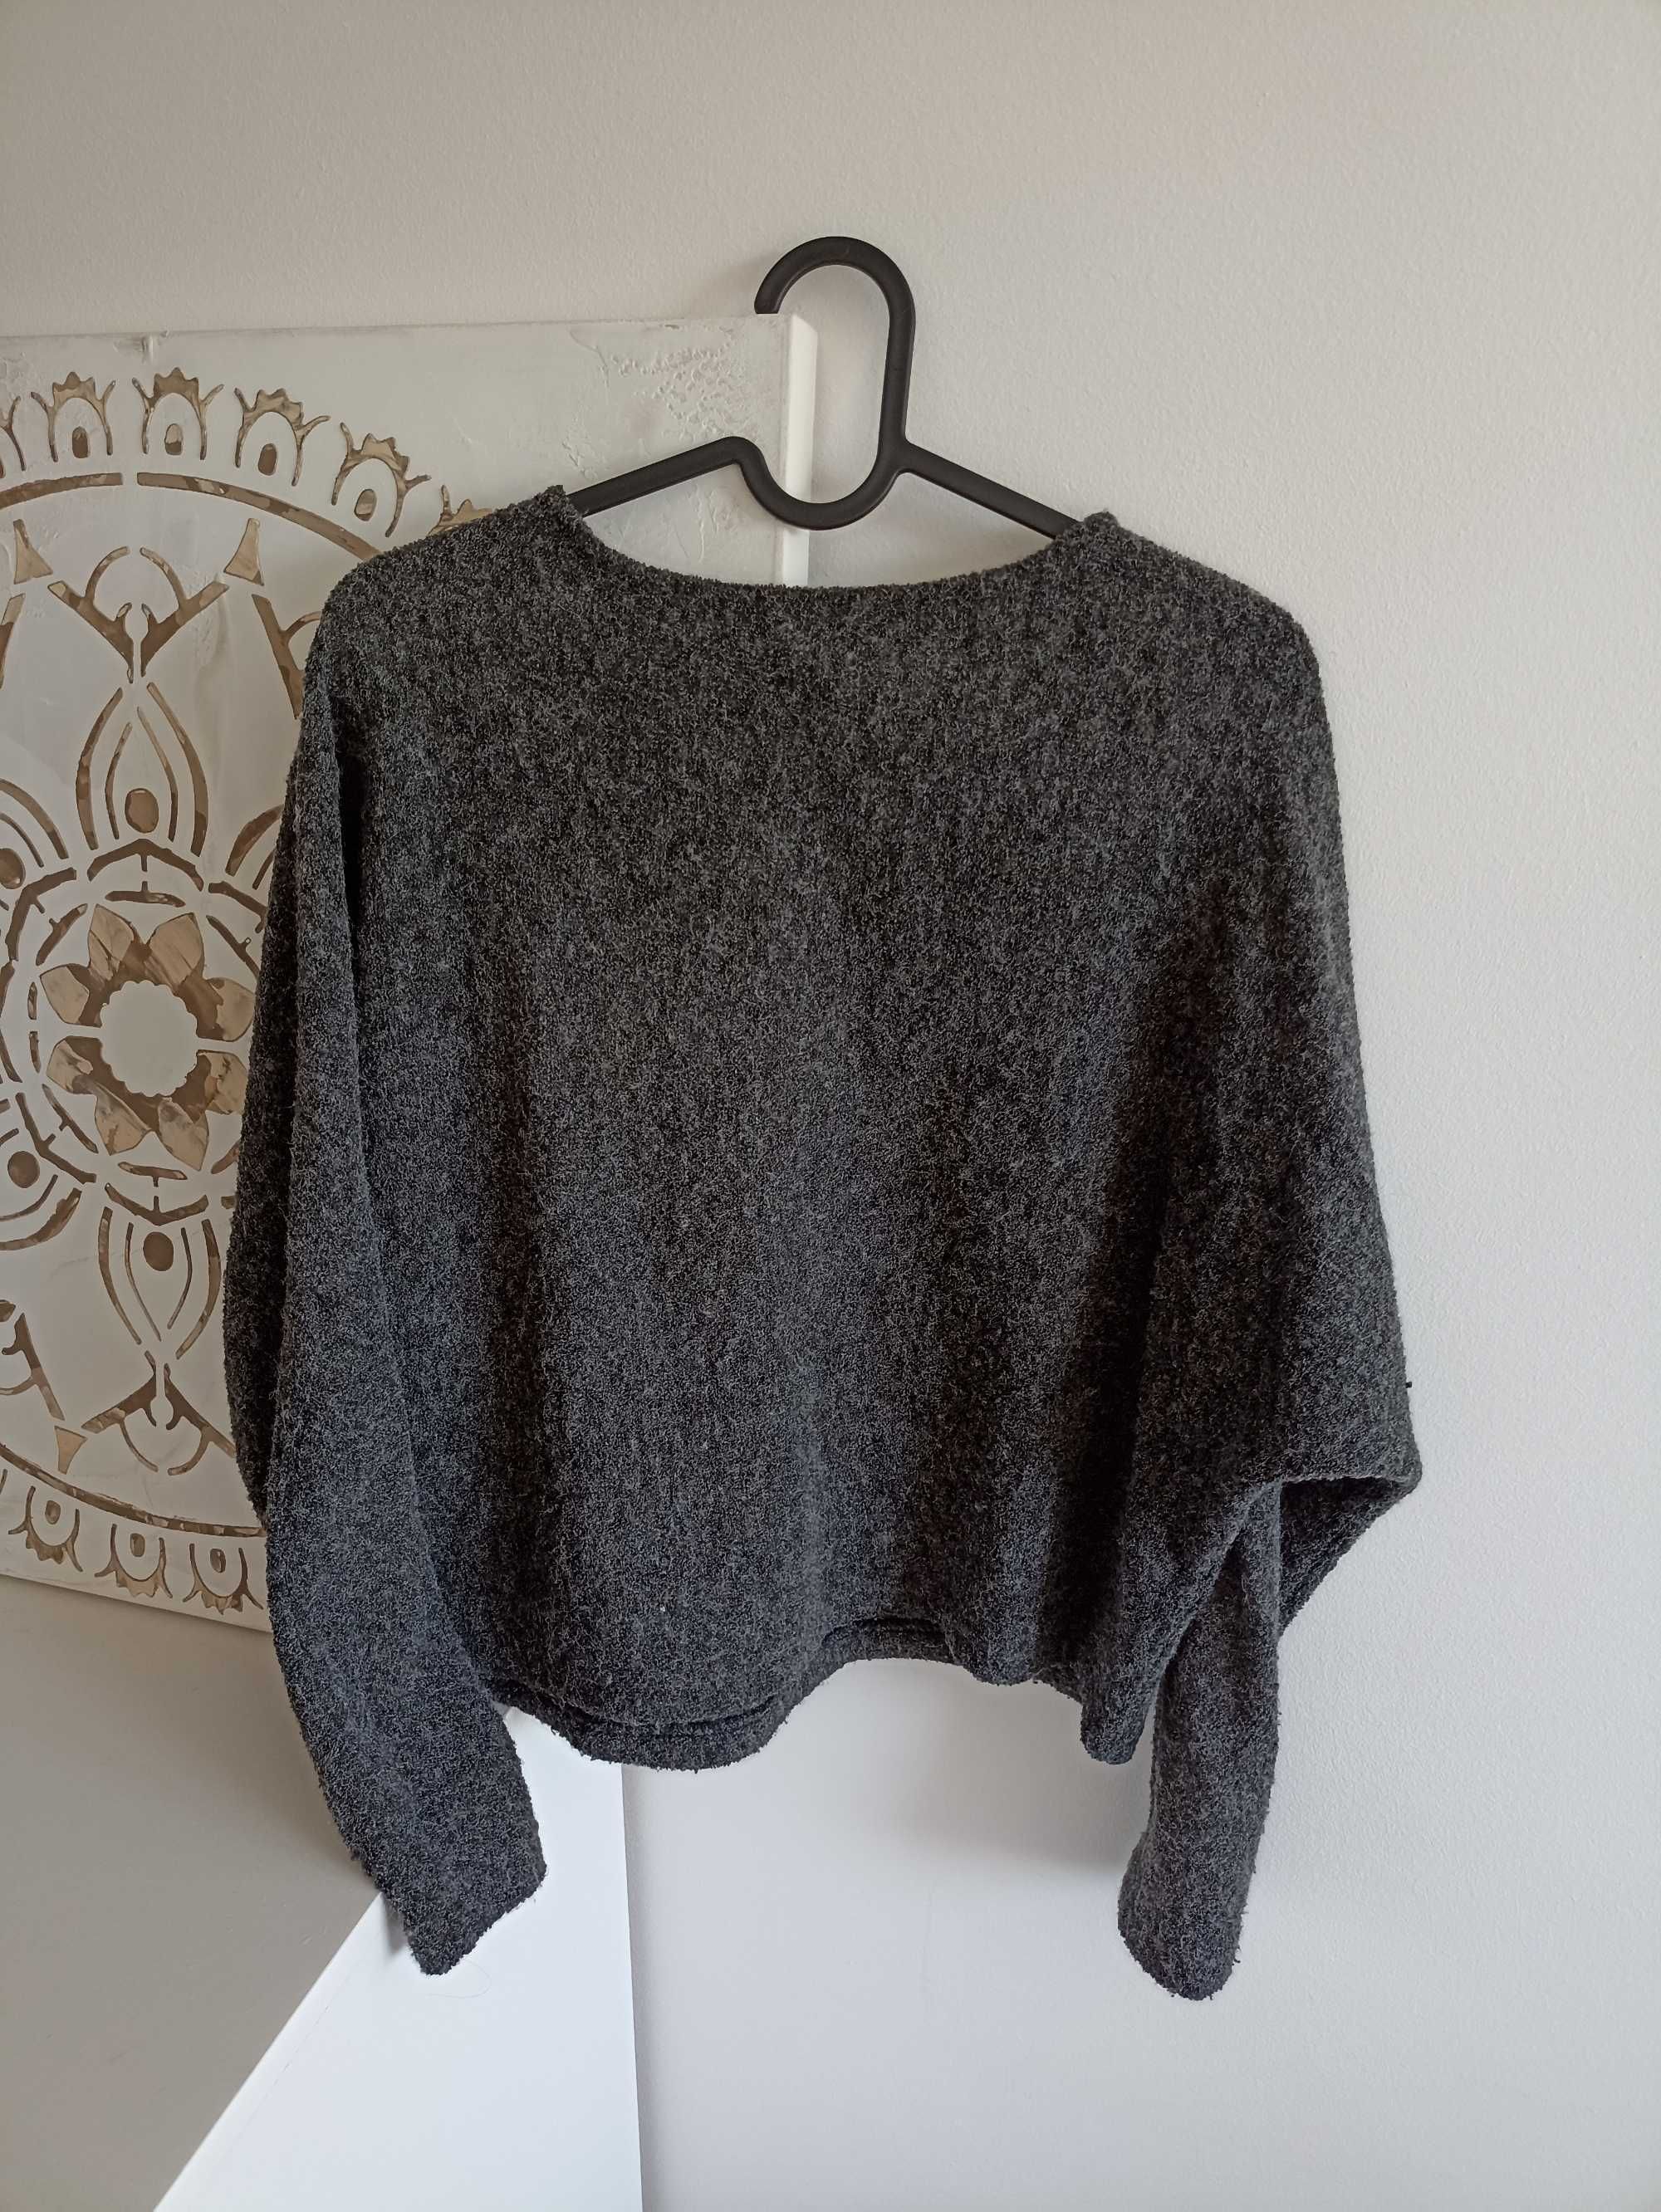 Szary sweterek nietoperz H&M rozmiar XS/S